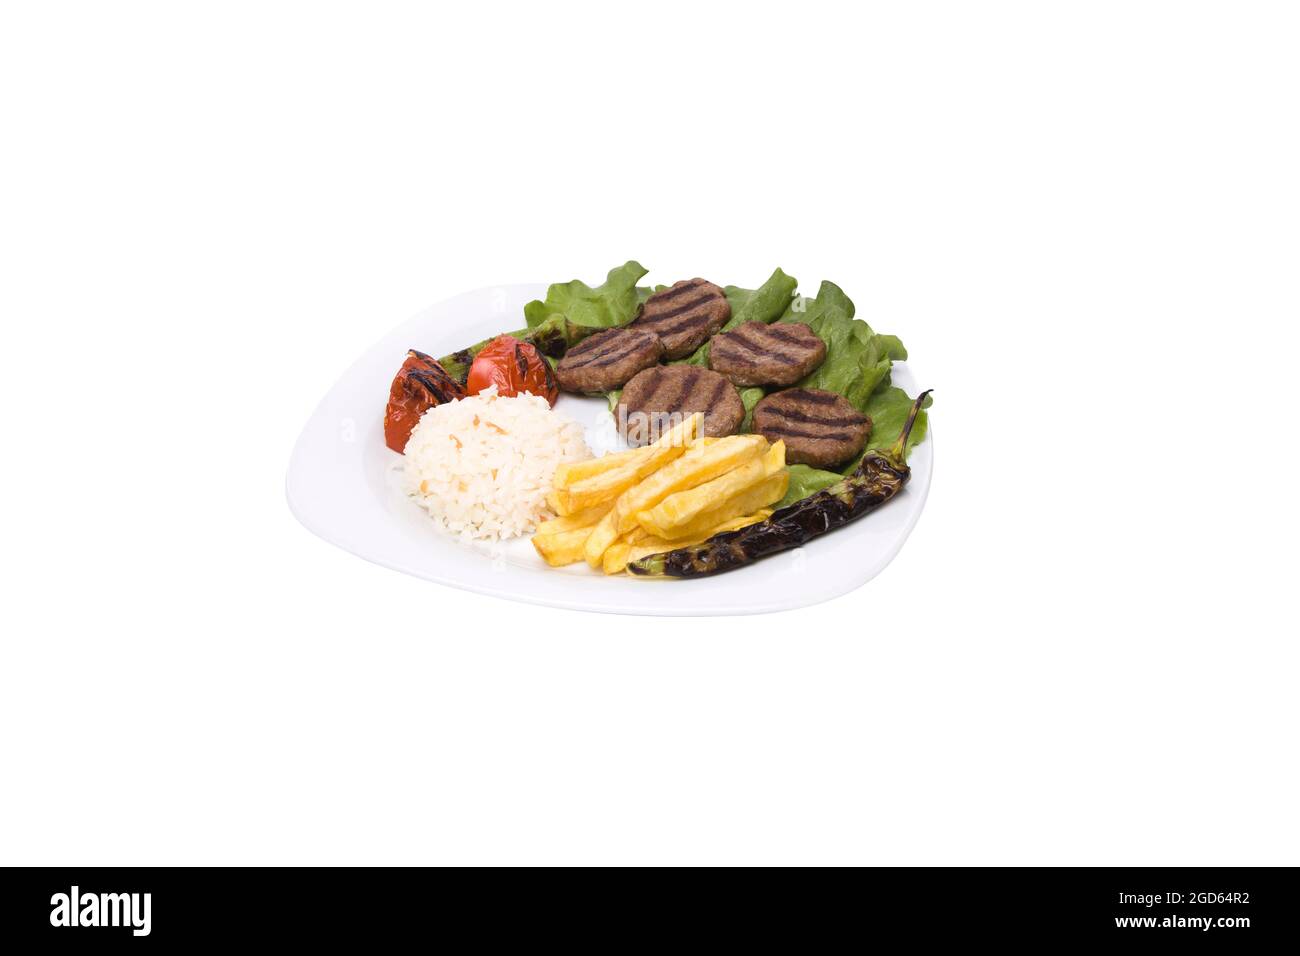 Boulettes de viande ou kofte turques, kofte de viande, frites de riz, poivre, aubergine Banque D'Images